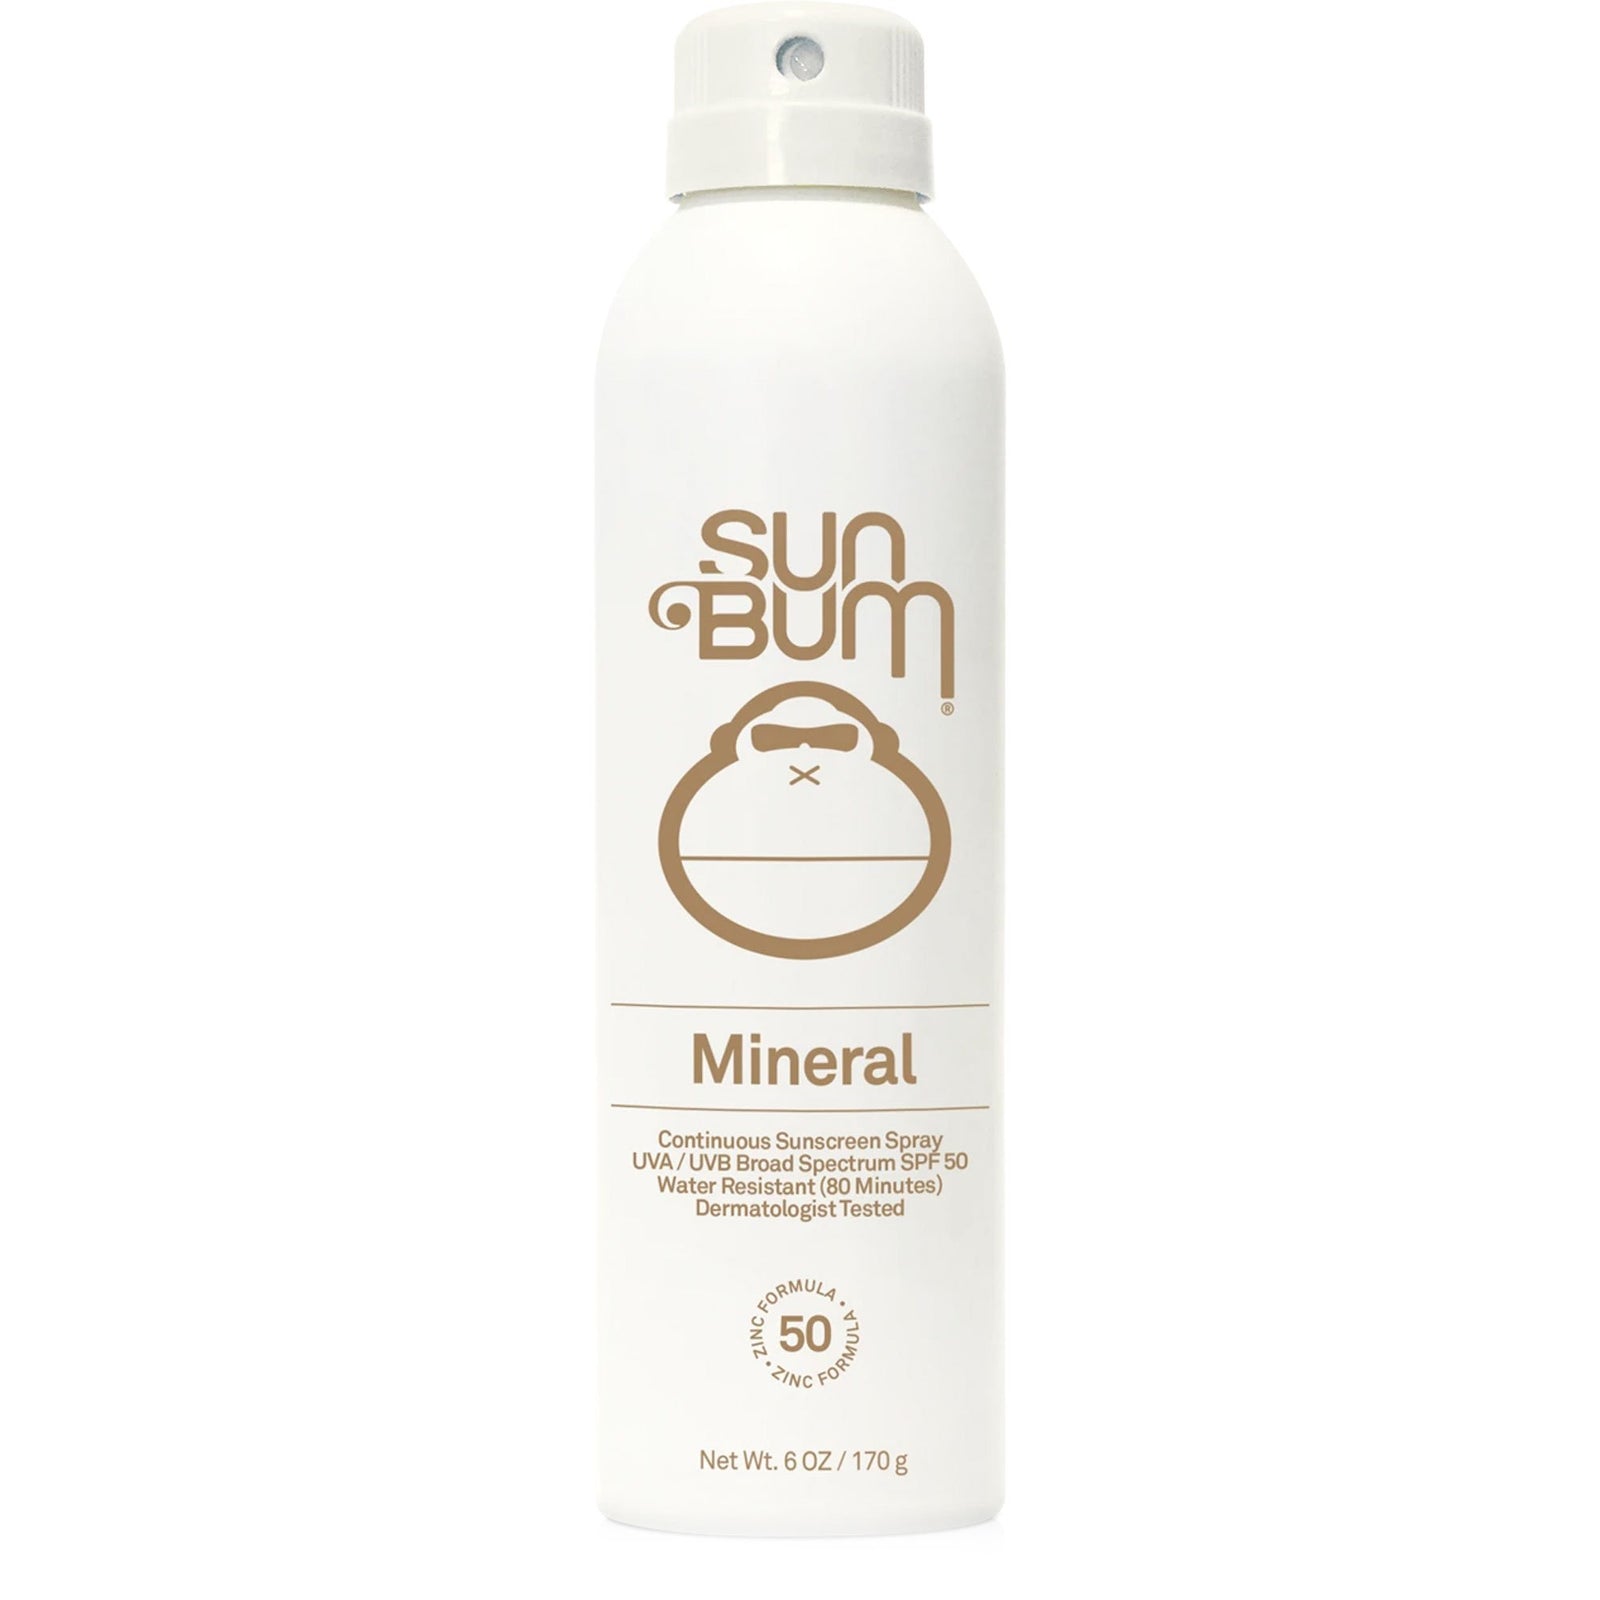 Sun Bum Sunscreen - Surf Station Store